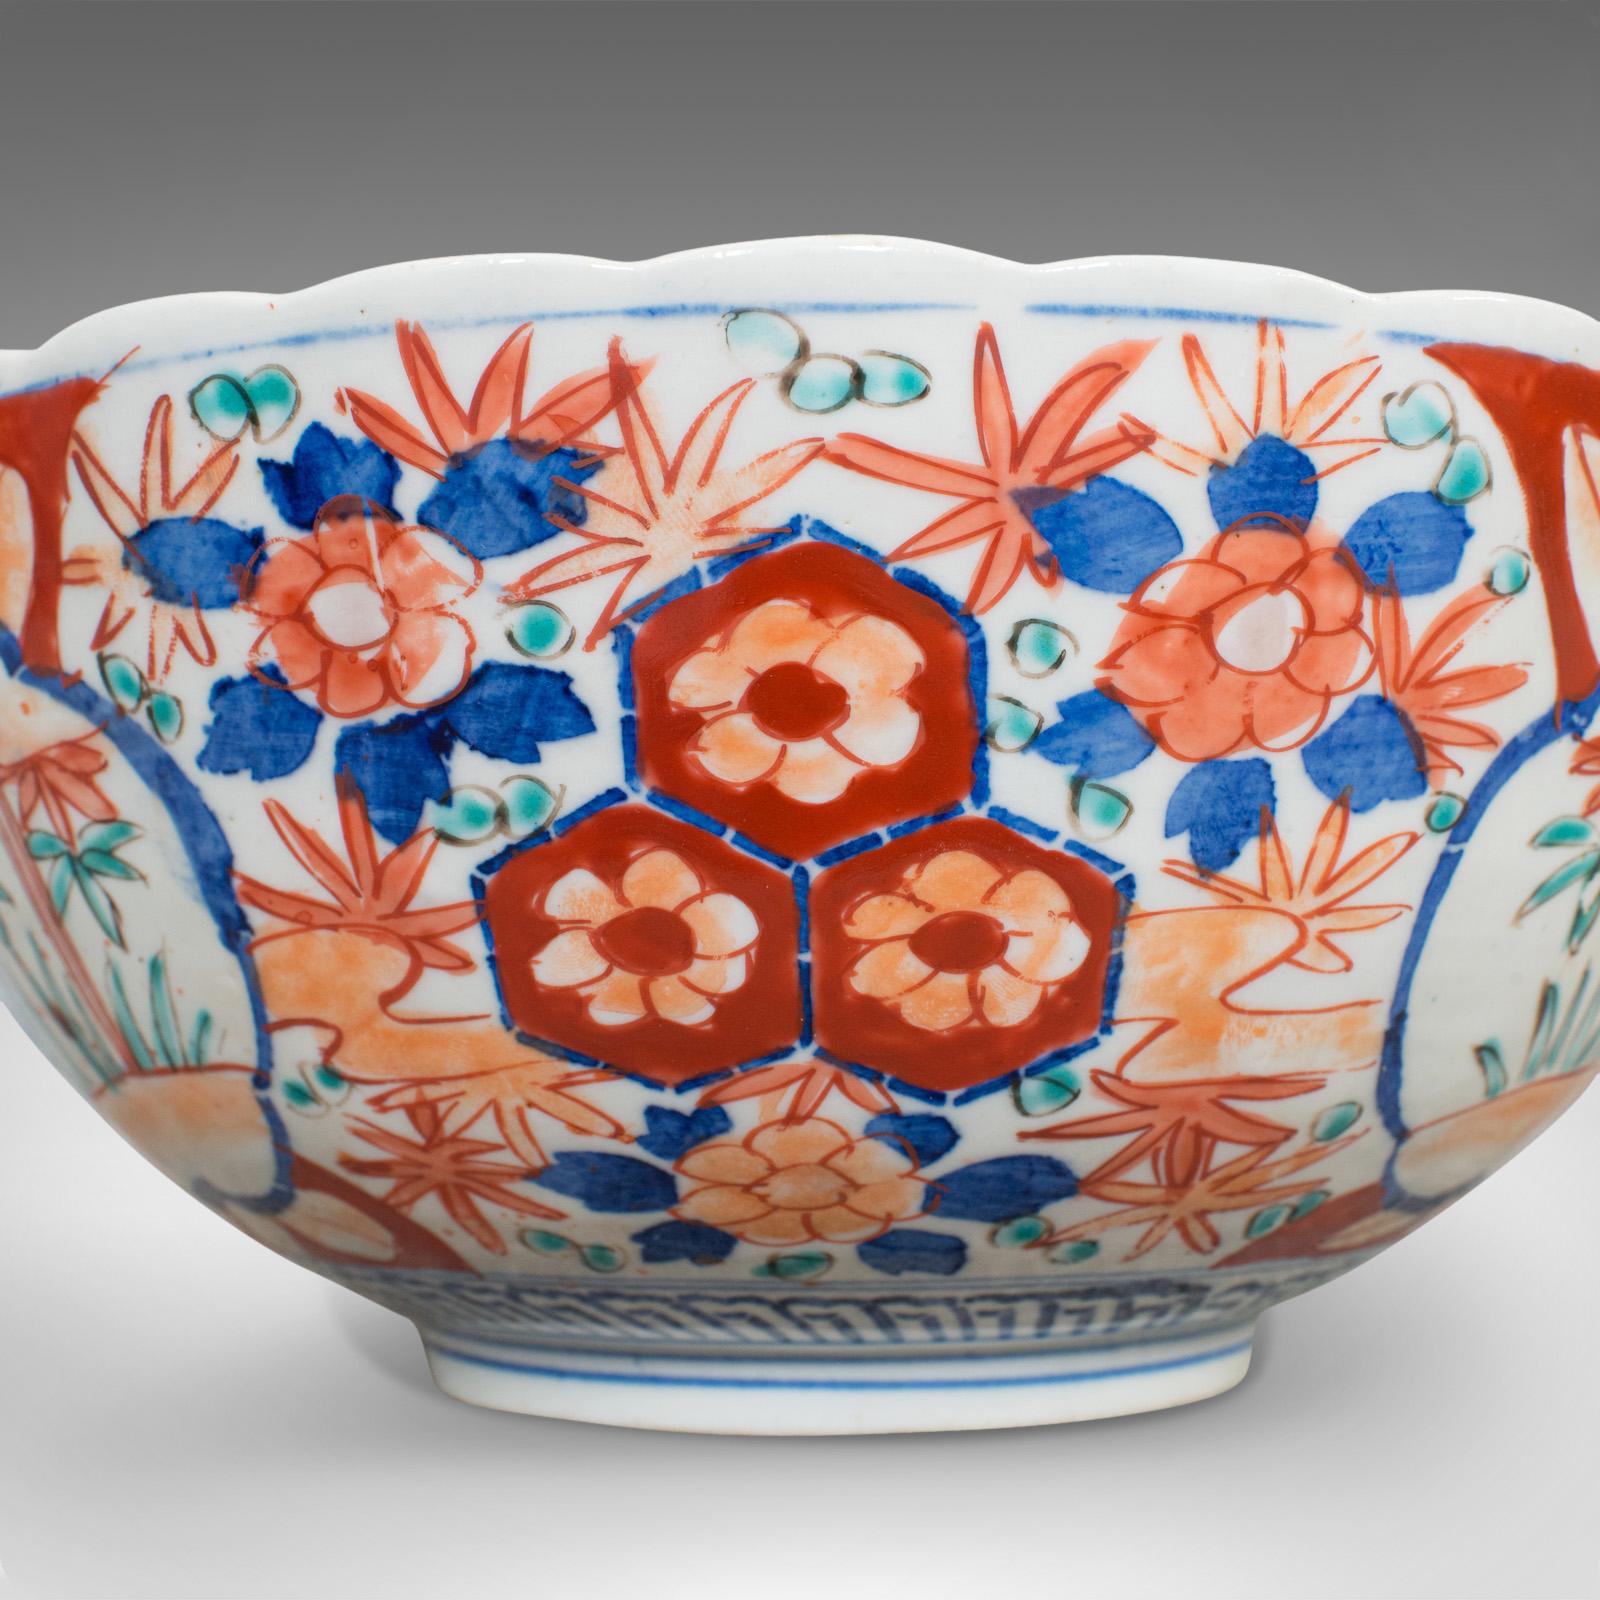 20th Century Large Vintage Imari Bowl, Oriental, Ceramic, Serving Dish, Art Deco, circa 1940